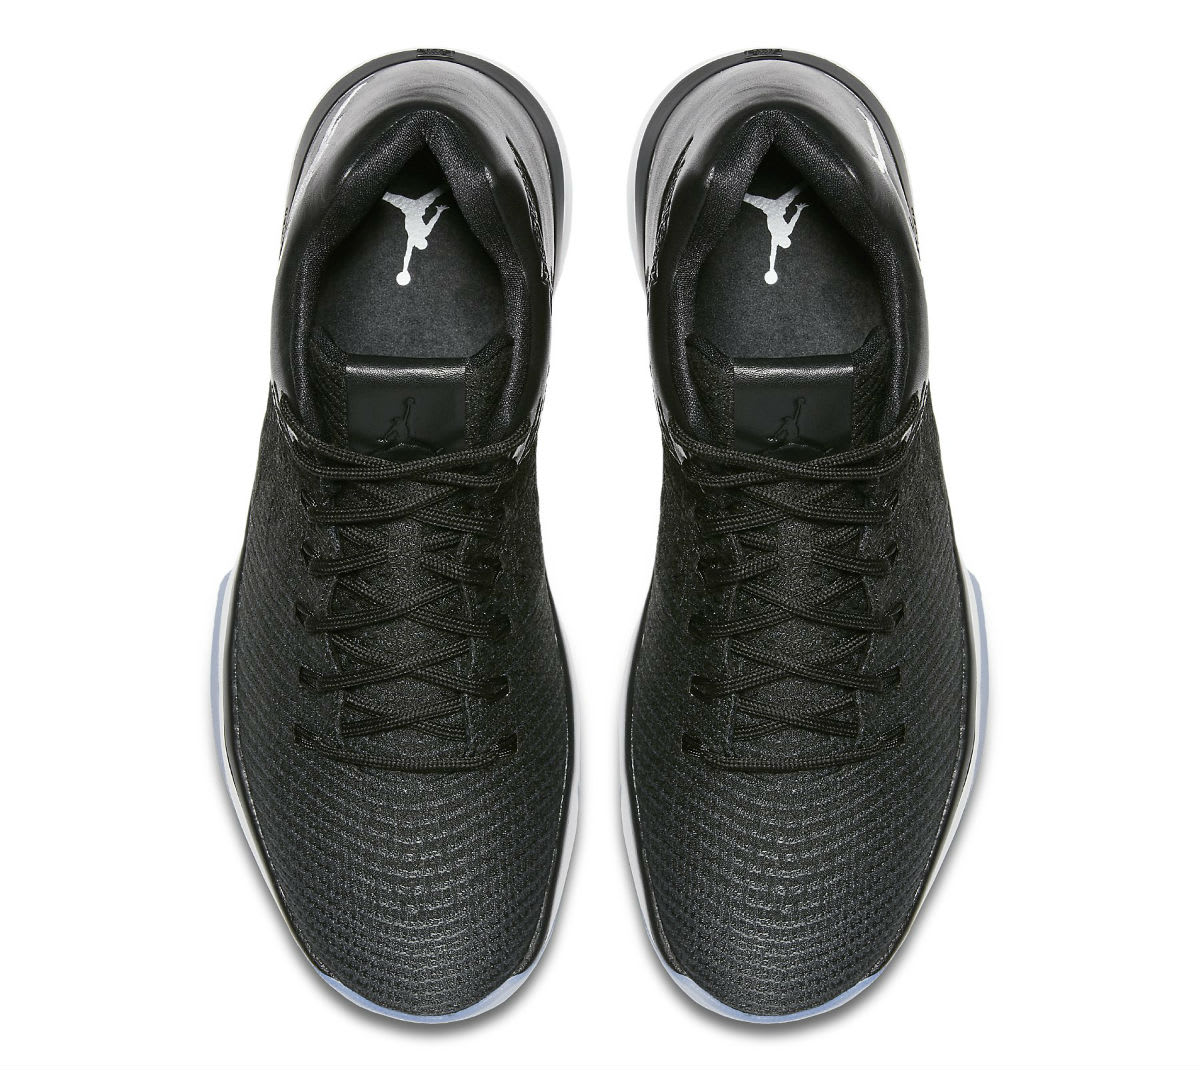 Air Jordan 31 Low Black White Release Date Top 897564-002